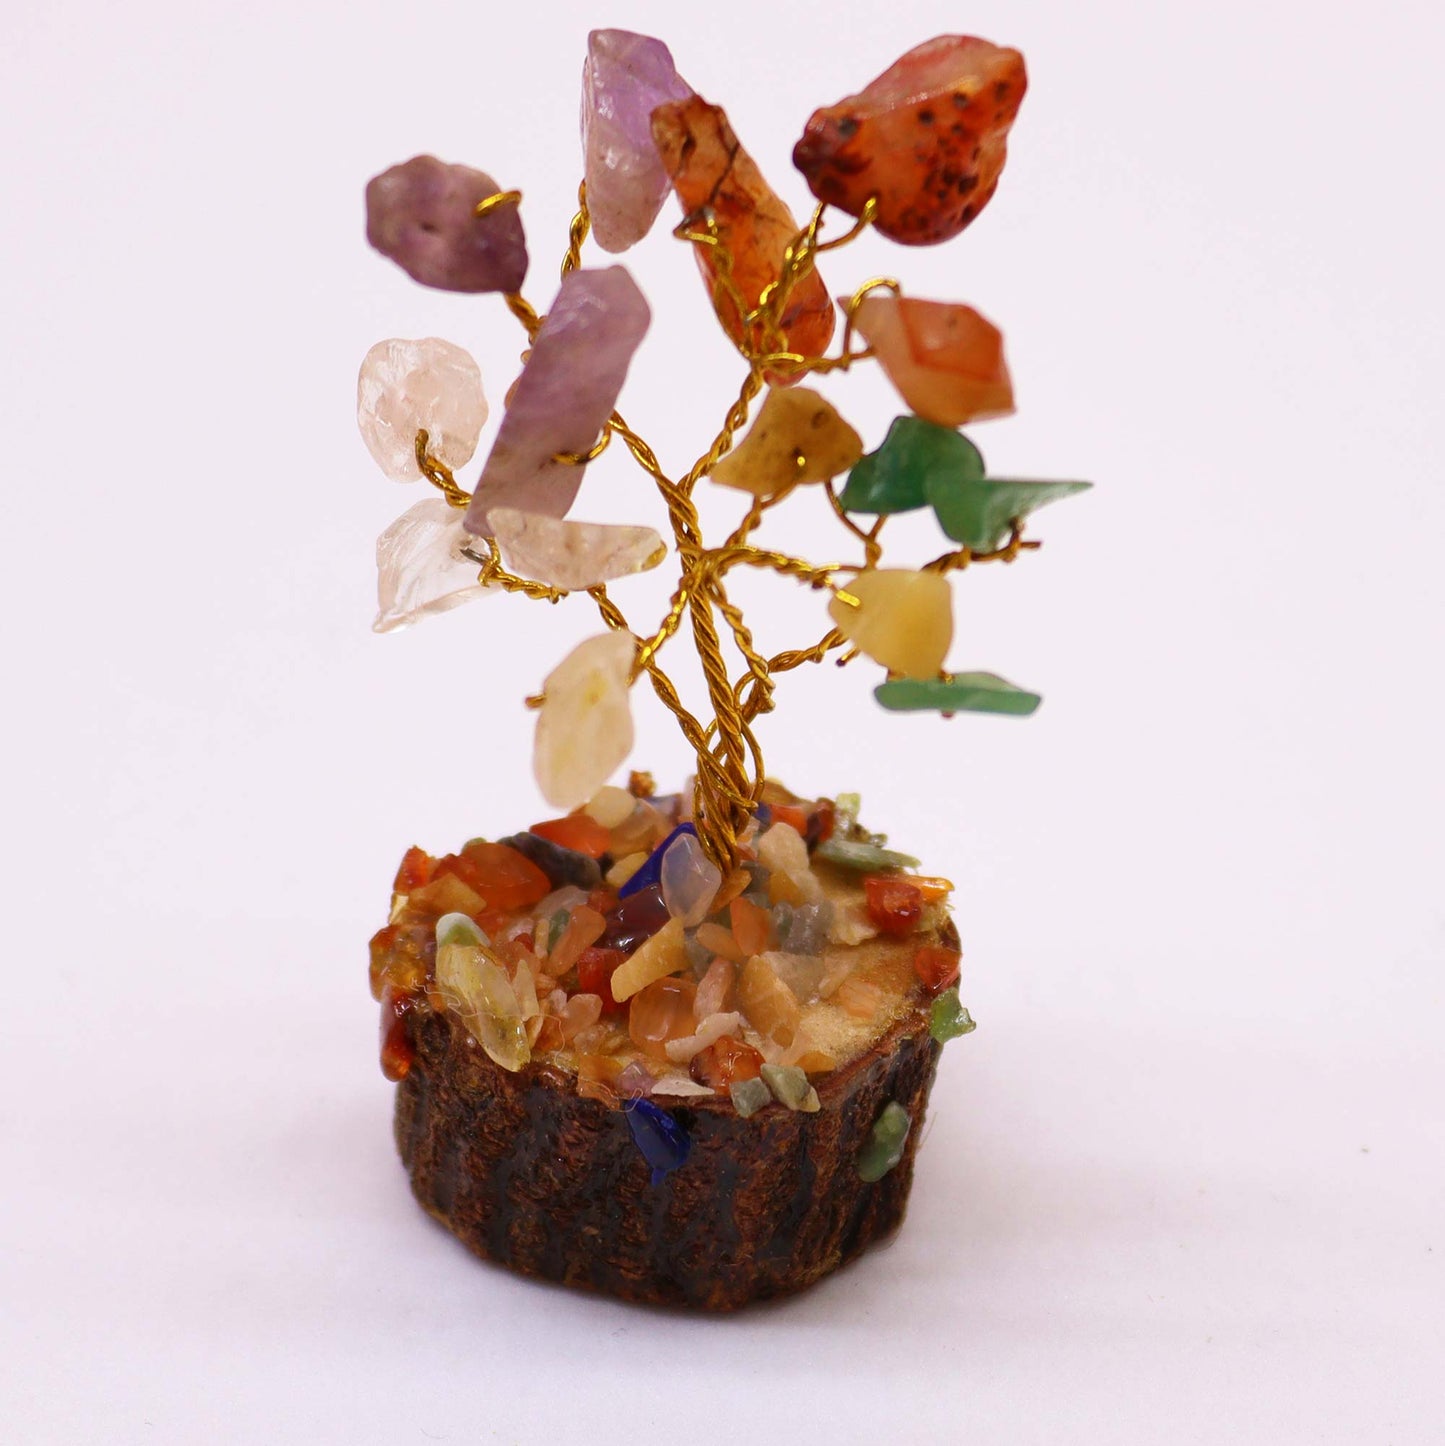 Mini Gemstone Tree On Wood Base - Multi Stones (15 stones)